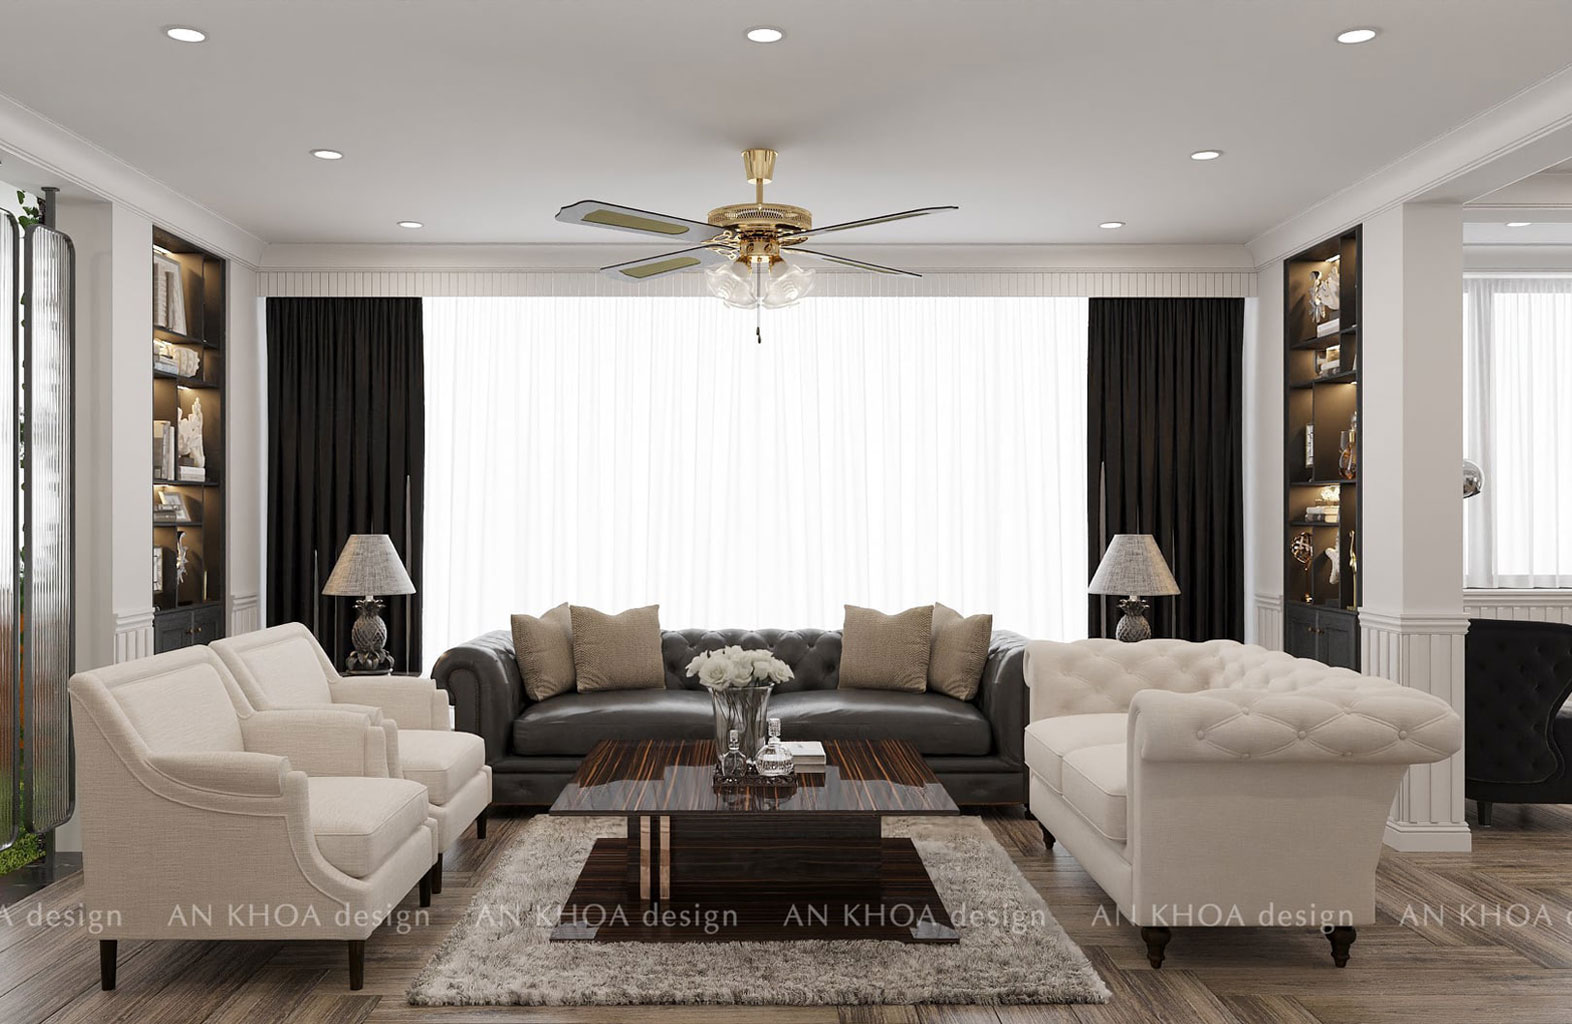 Thiết kế nội thất phòng khách chung cư theo phong cách tân cổ điển